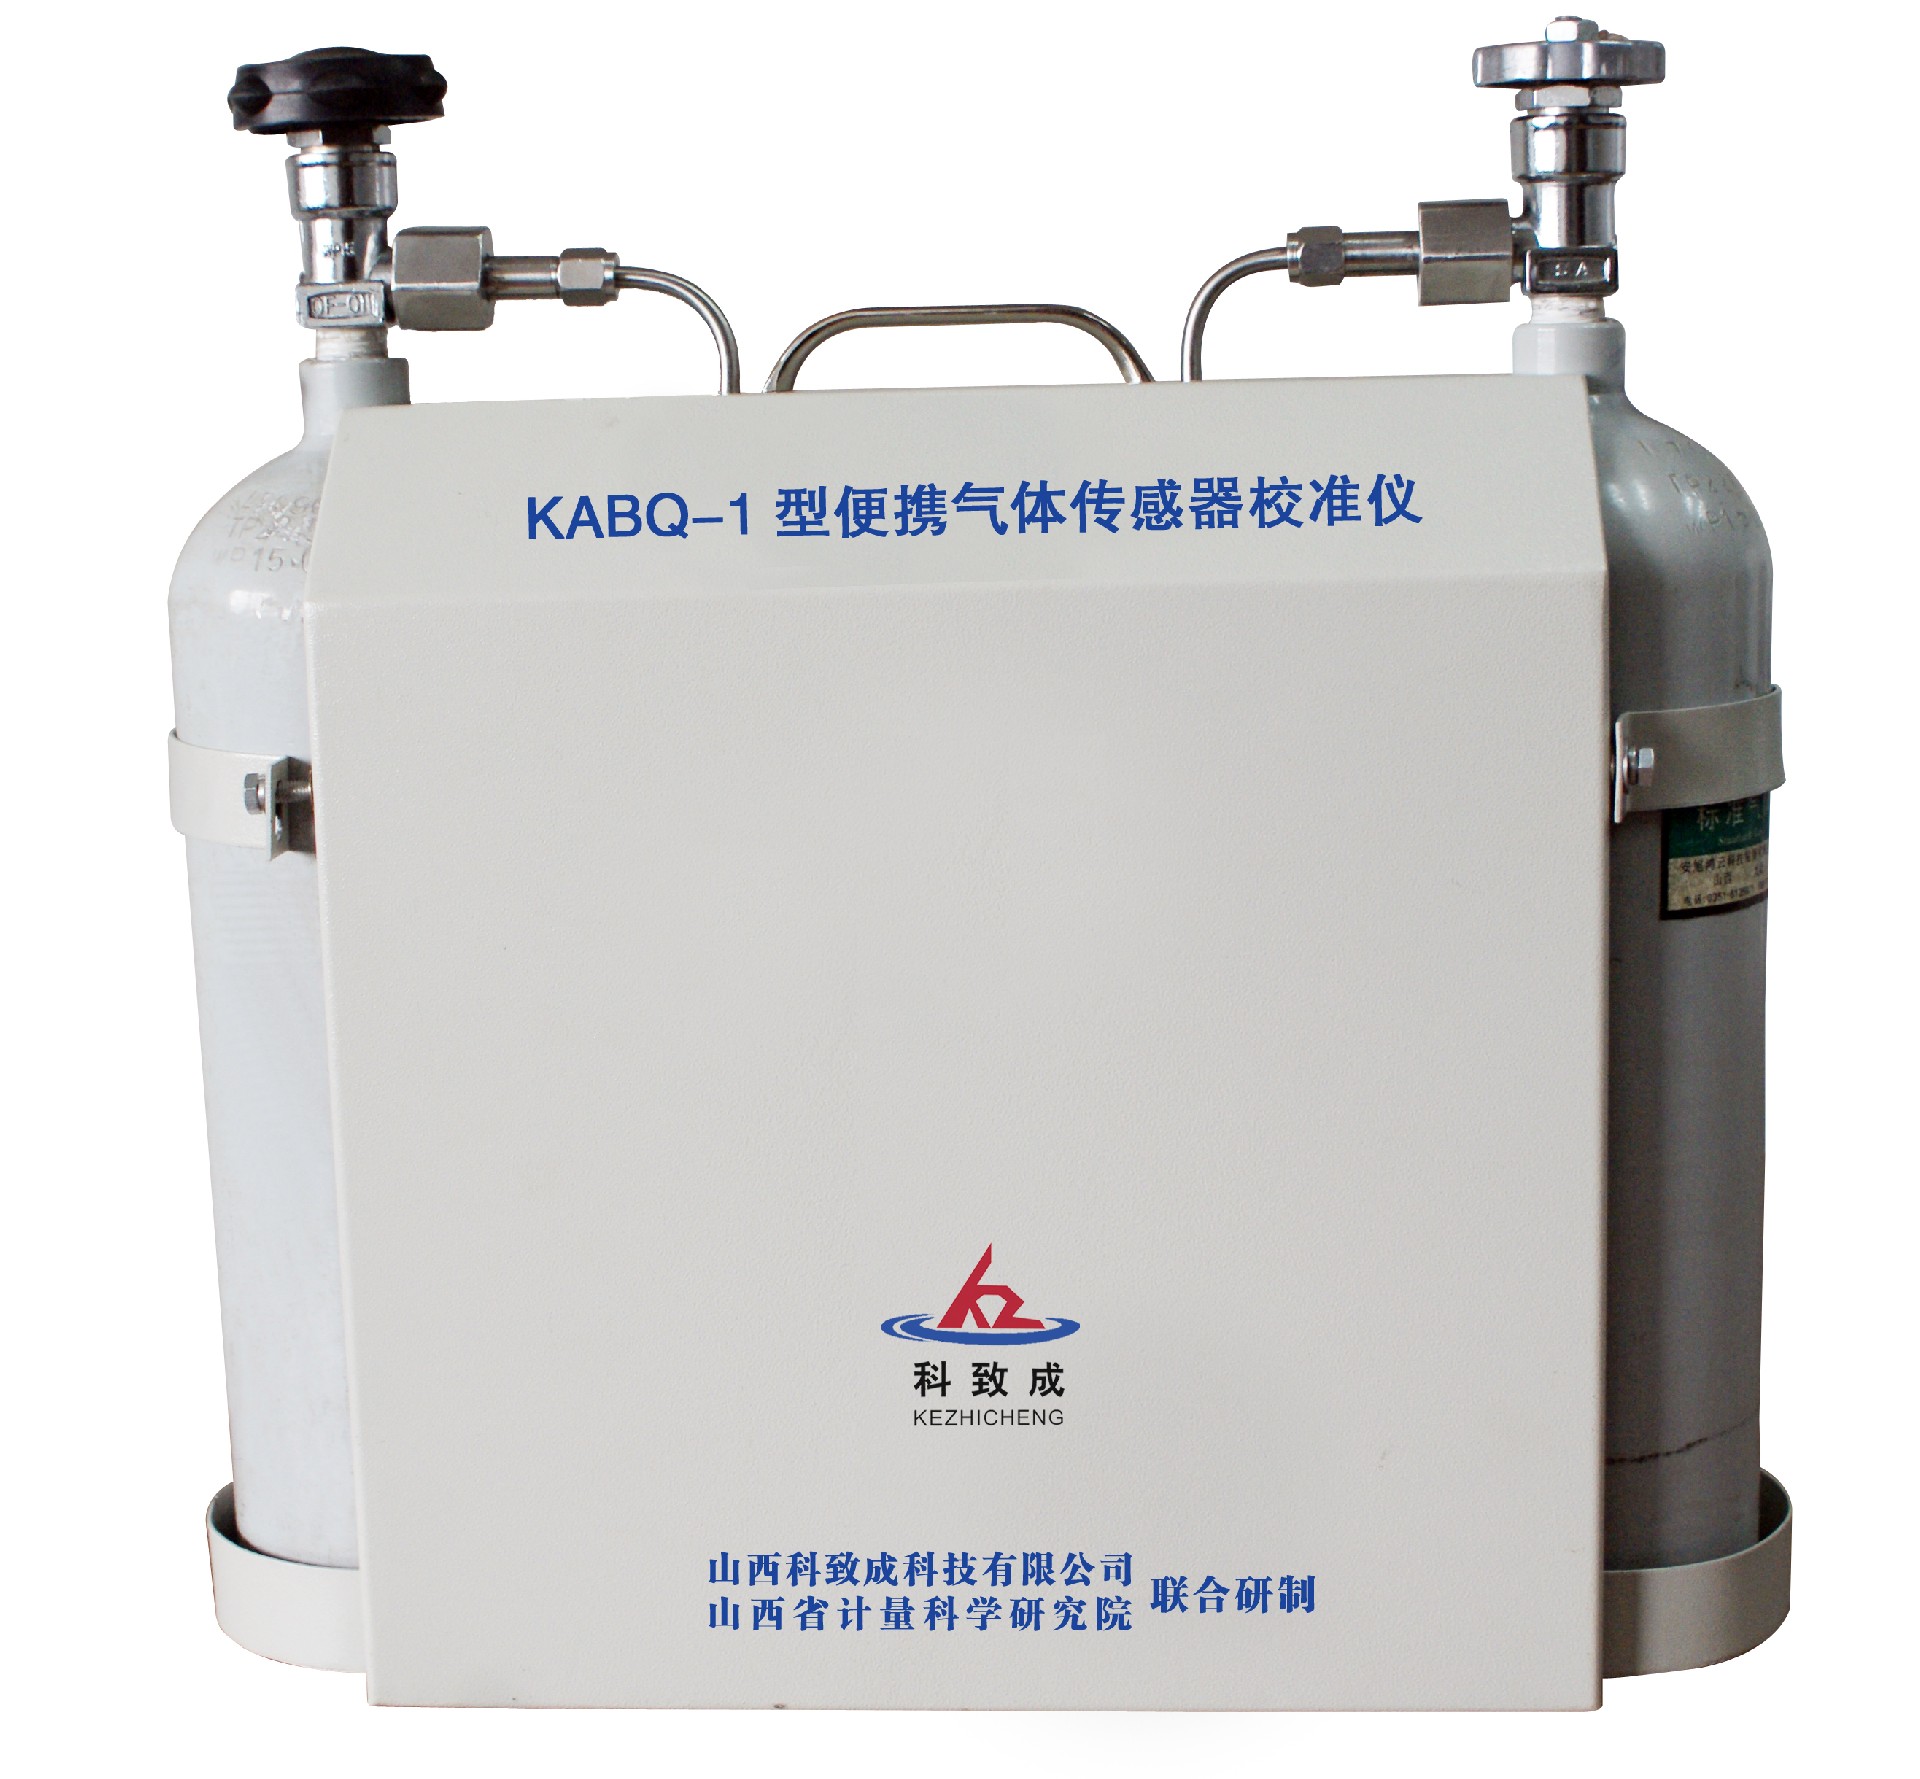 大同KABQ-1型便携气体传感器校准仪